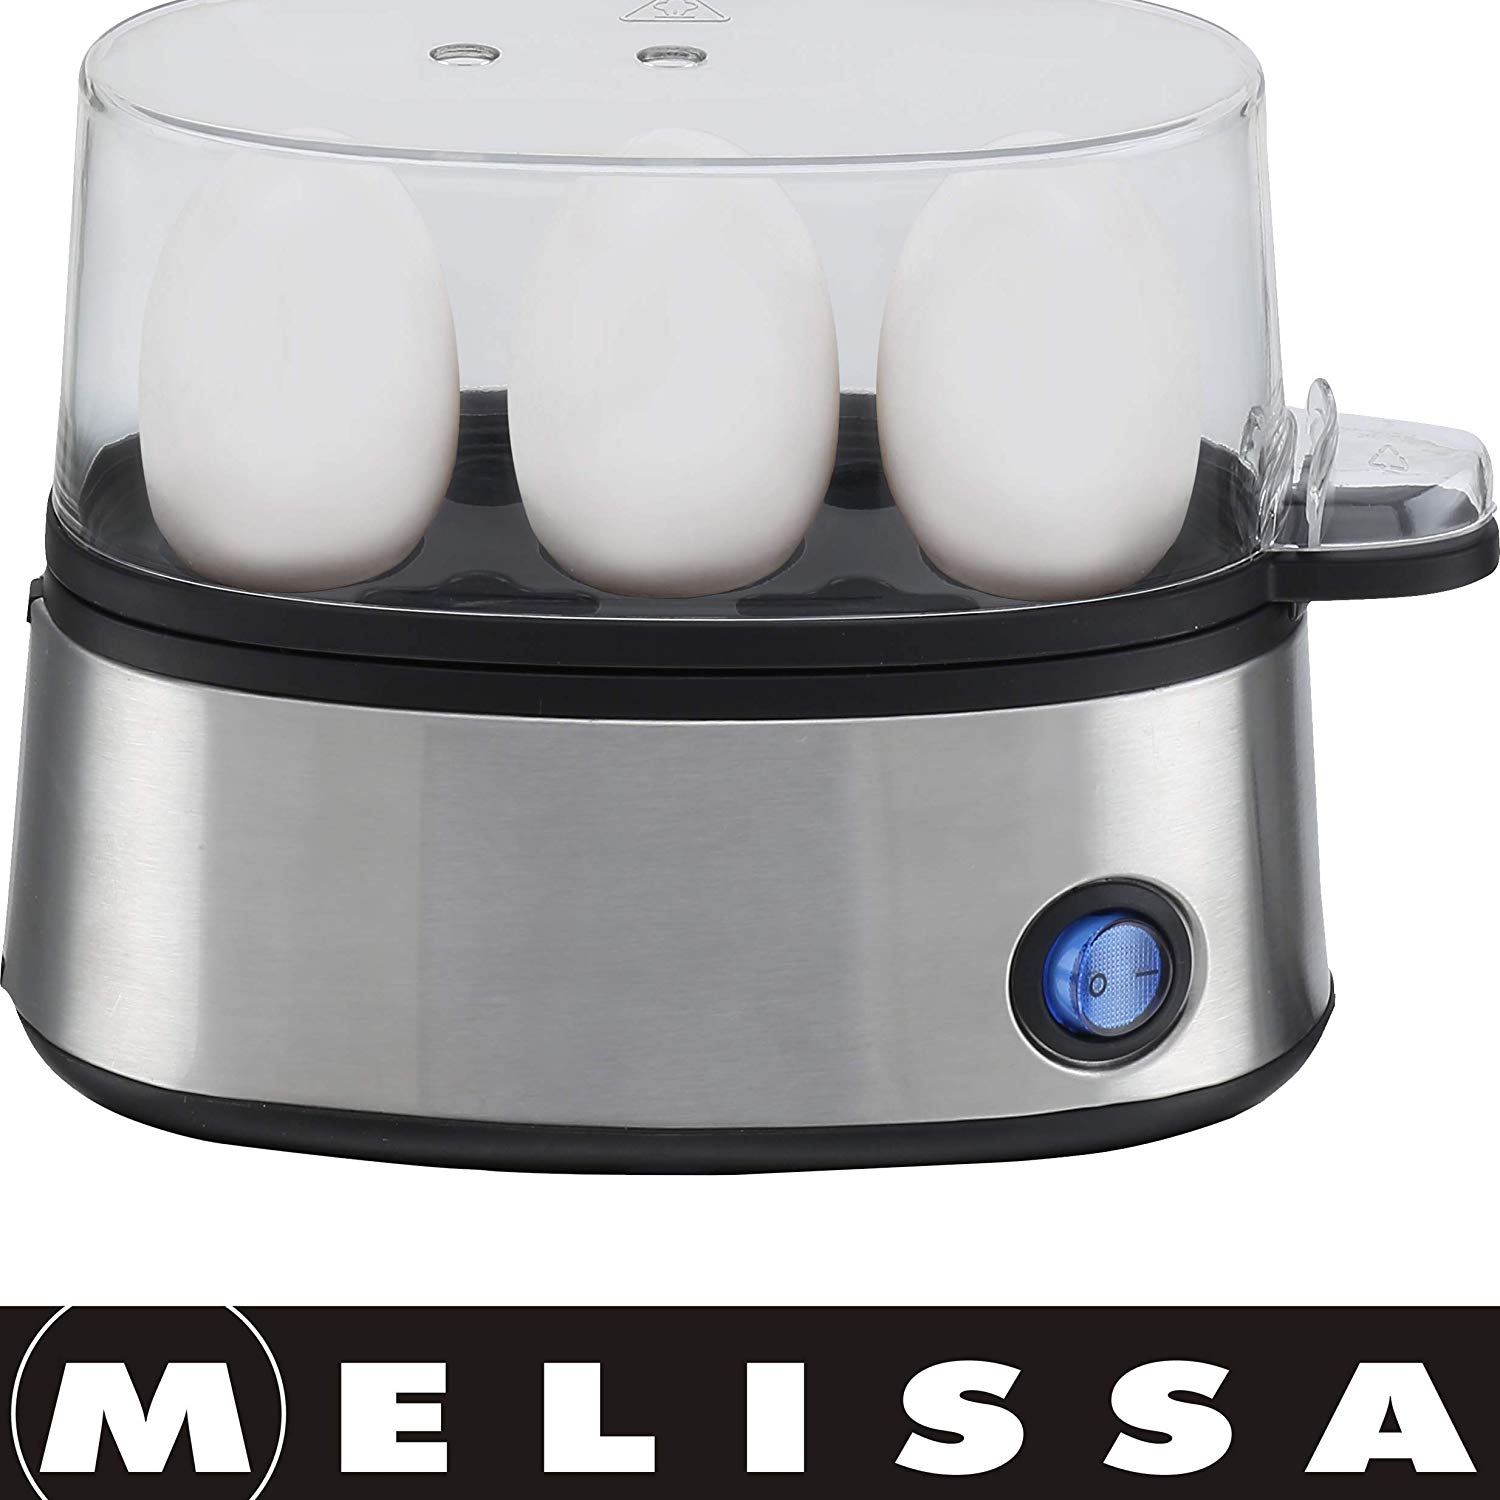 Melissa 16220019 for 3 egg design Egg Boiler Egg Cooker, Stainless Steel, S